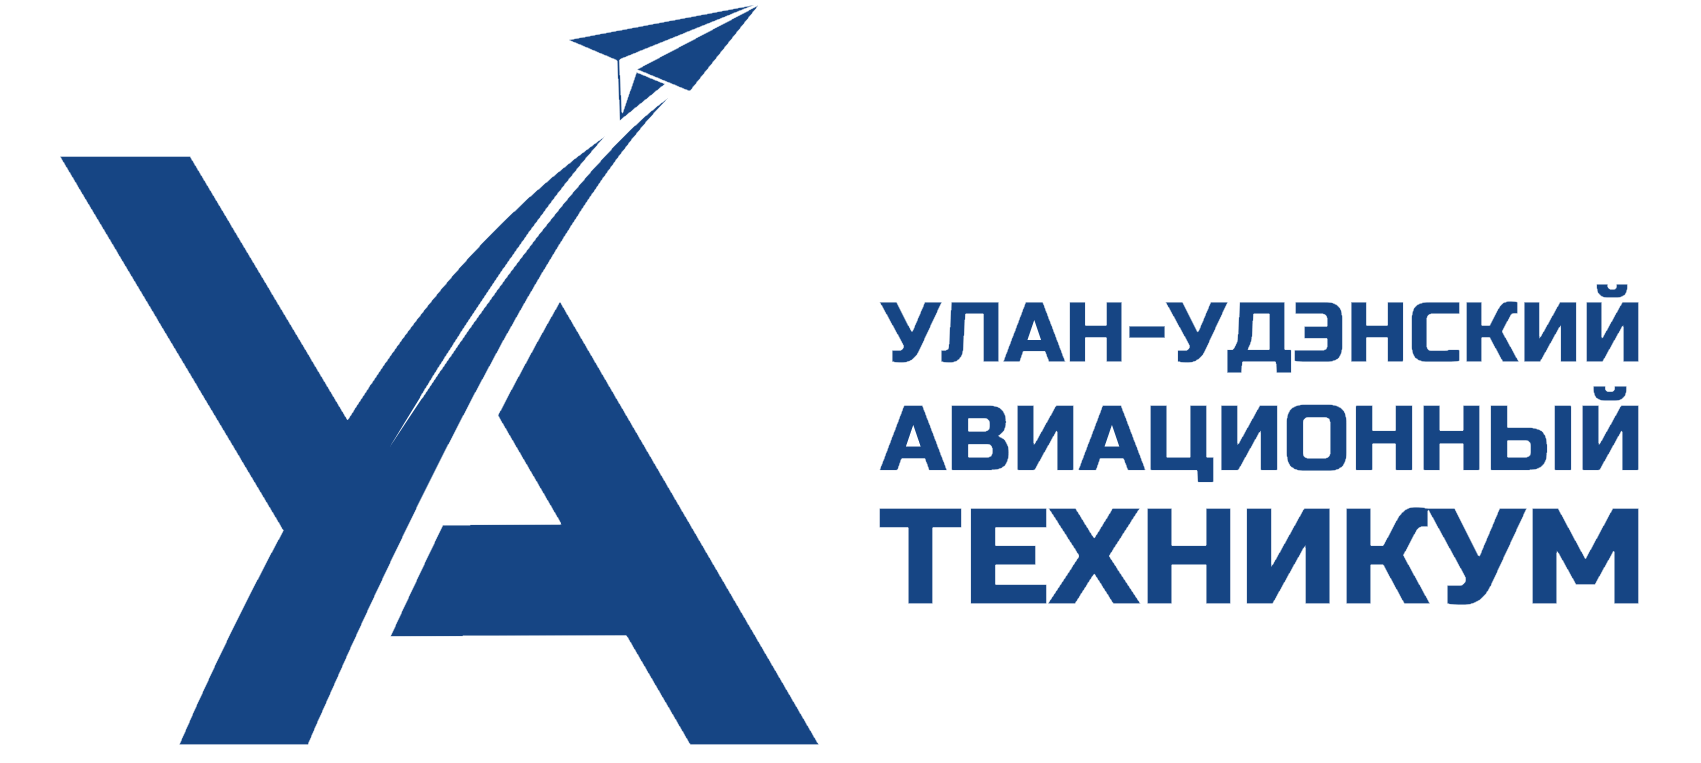 Улан-Удэнский авиационный техникум